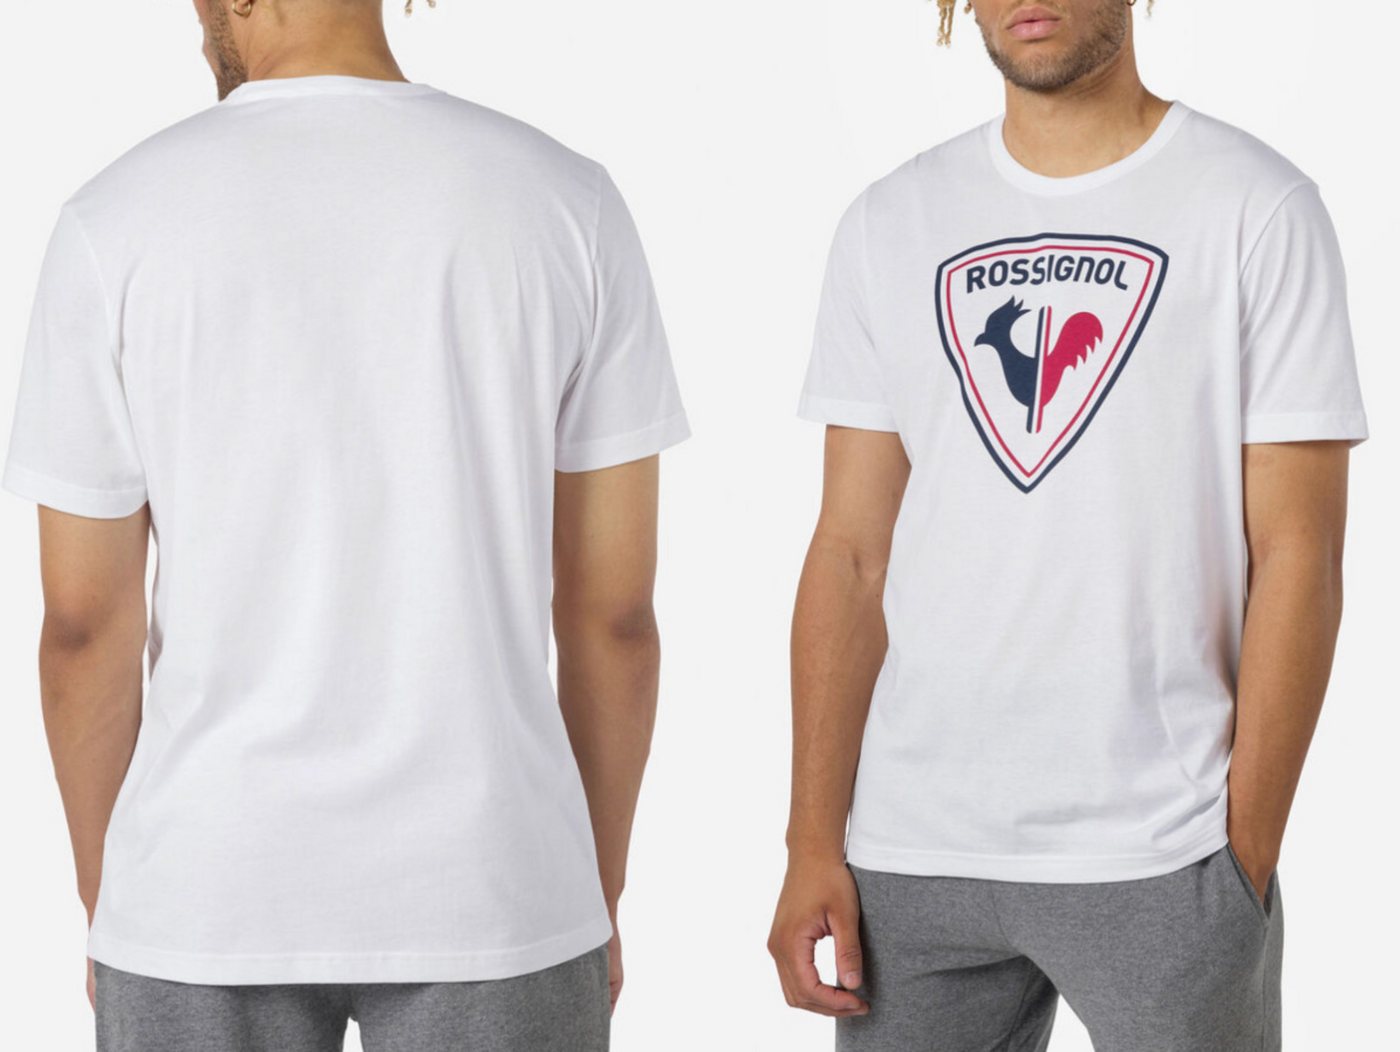 Rossignol T-Shirt ROSSIGNOL LOGO TEE T-shirt Shirt Supreme Comfort Cotton Sport Top L von Rossignol